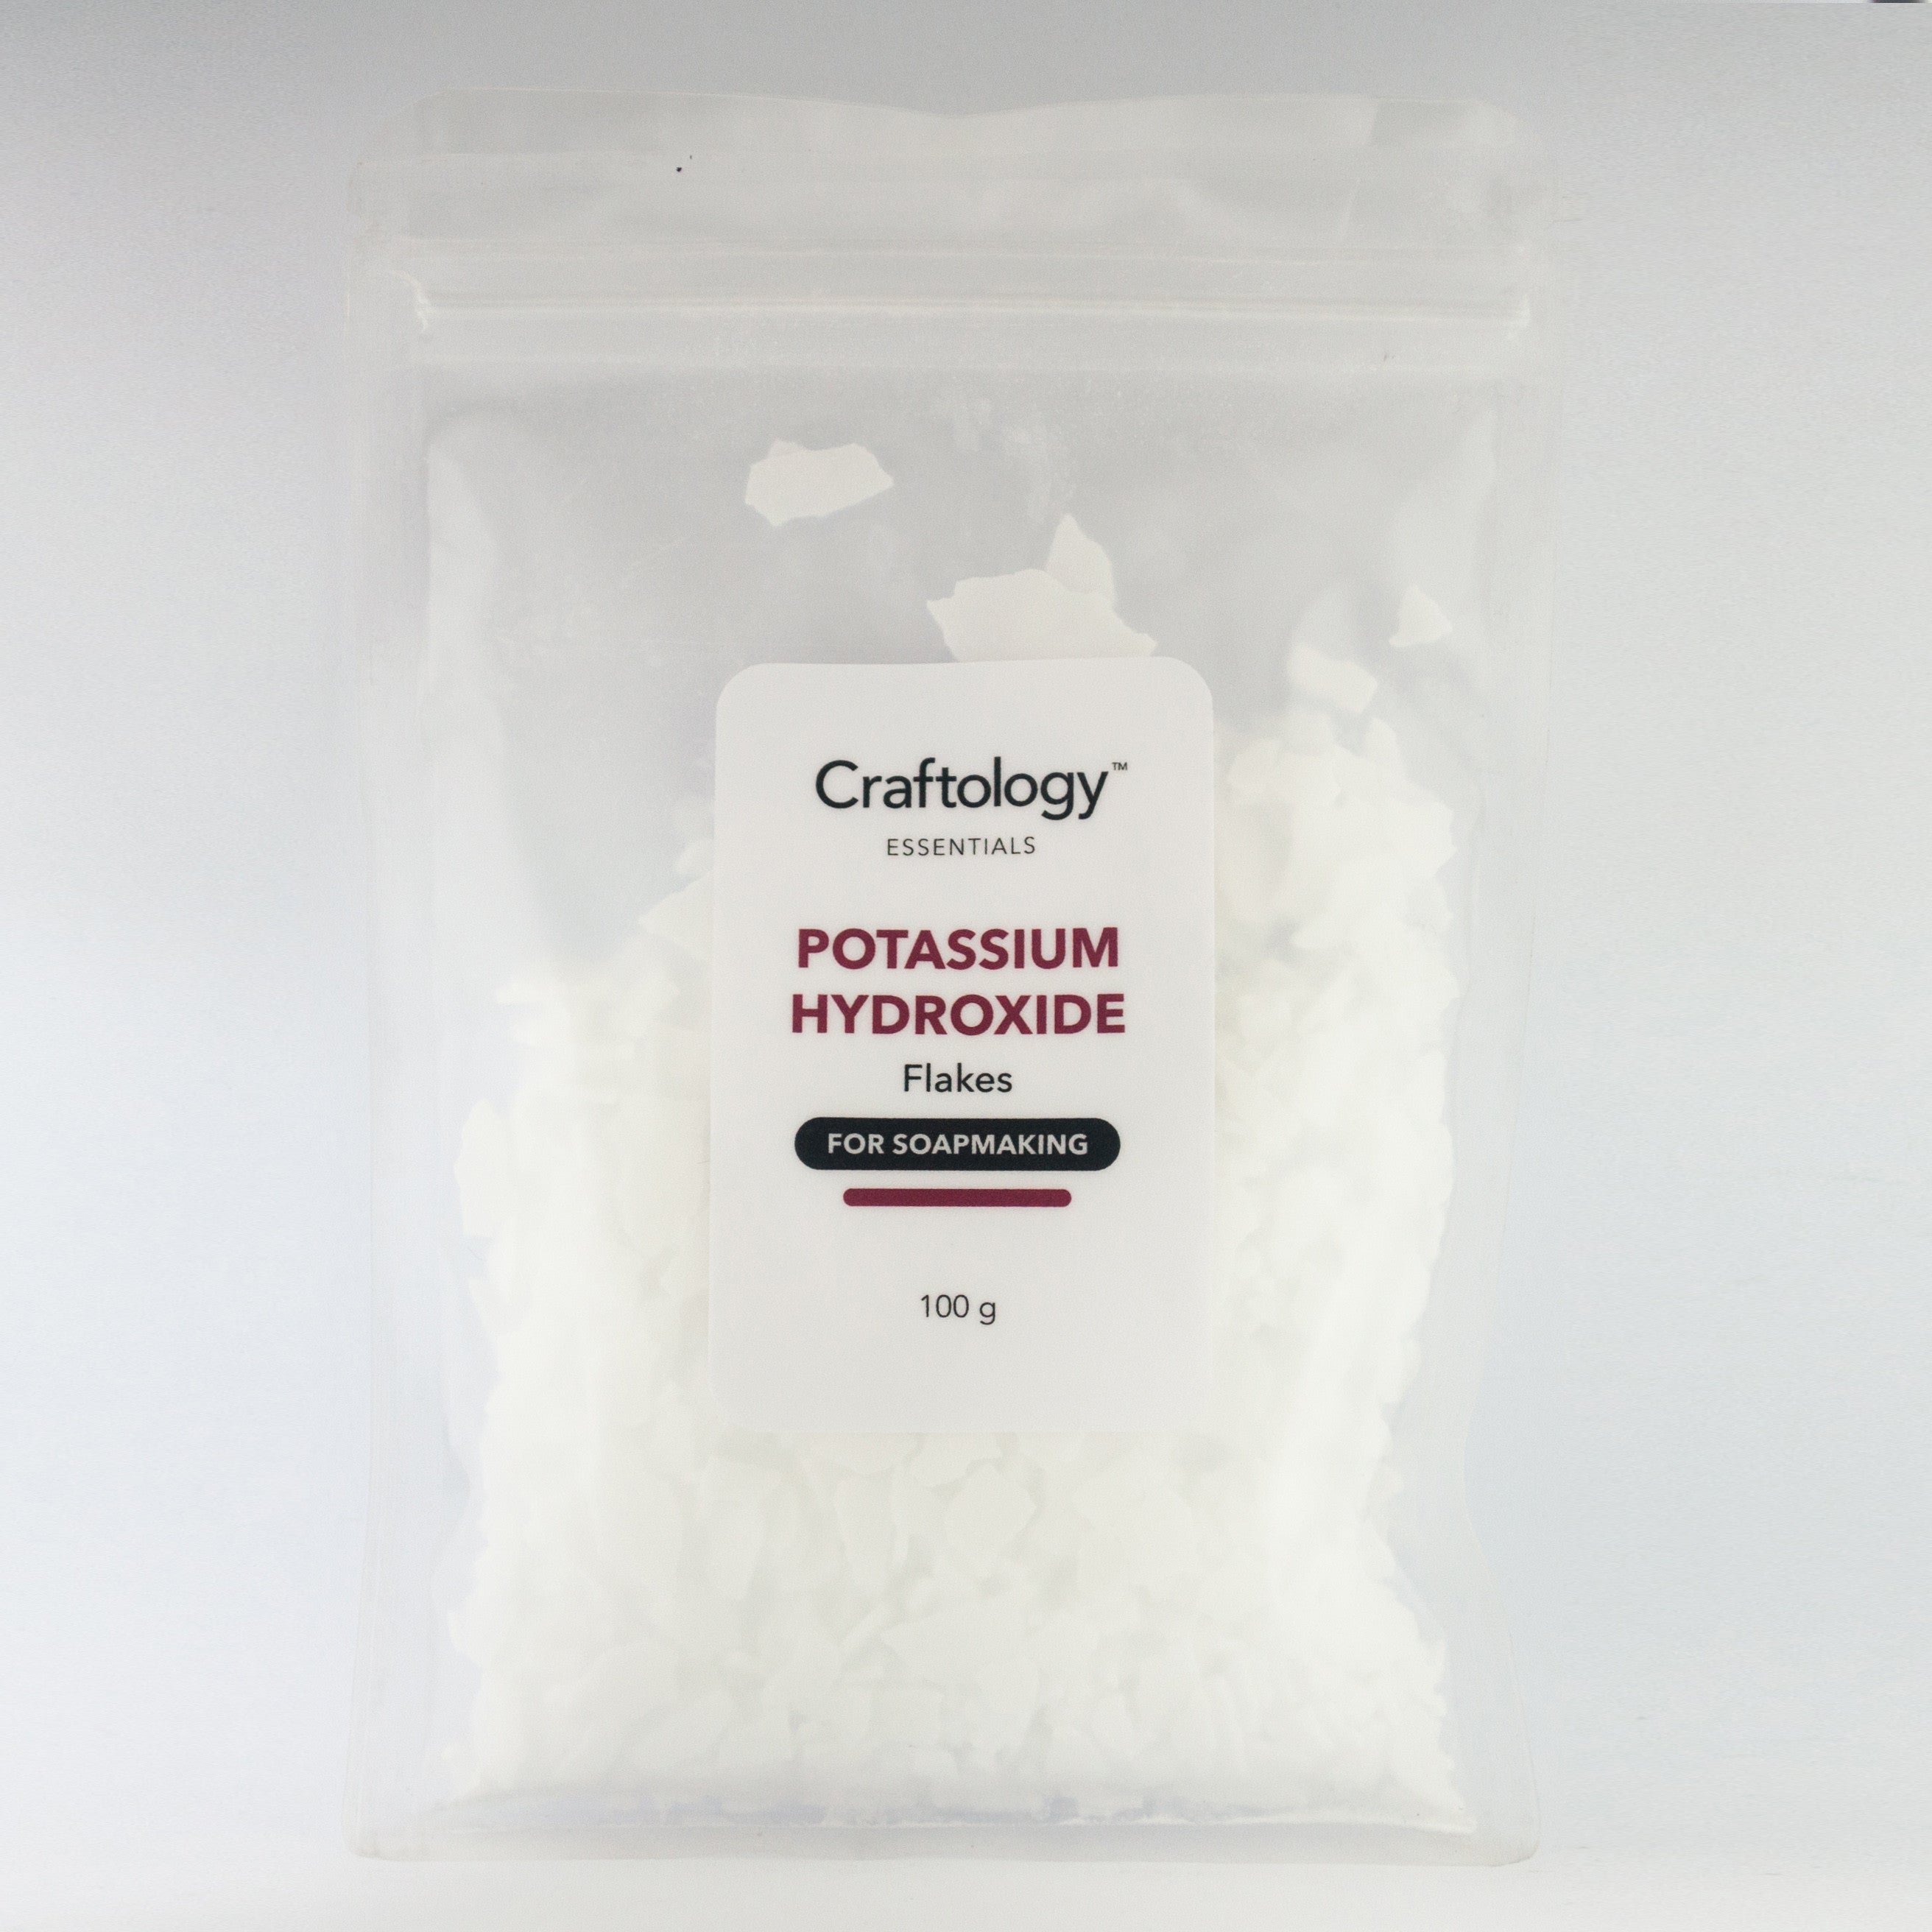 Potassium Hydroxide